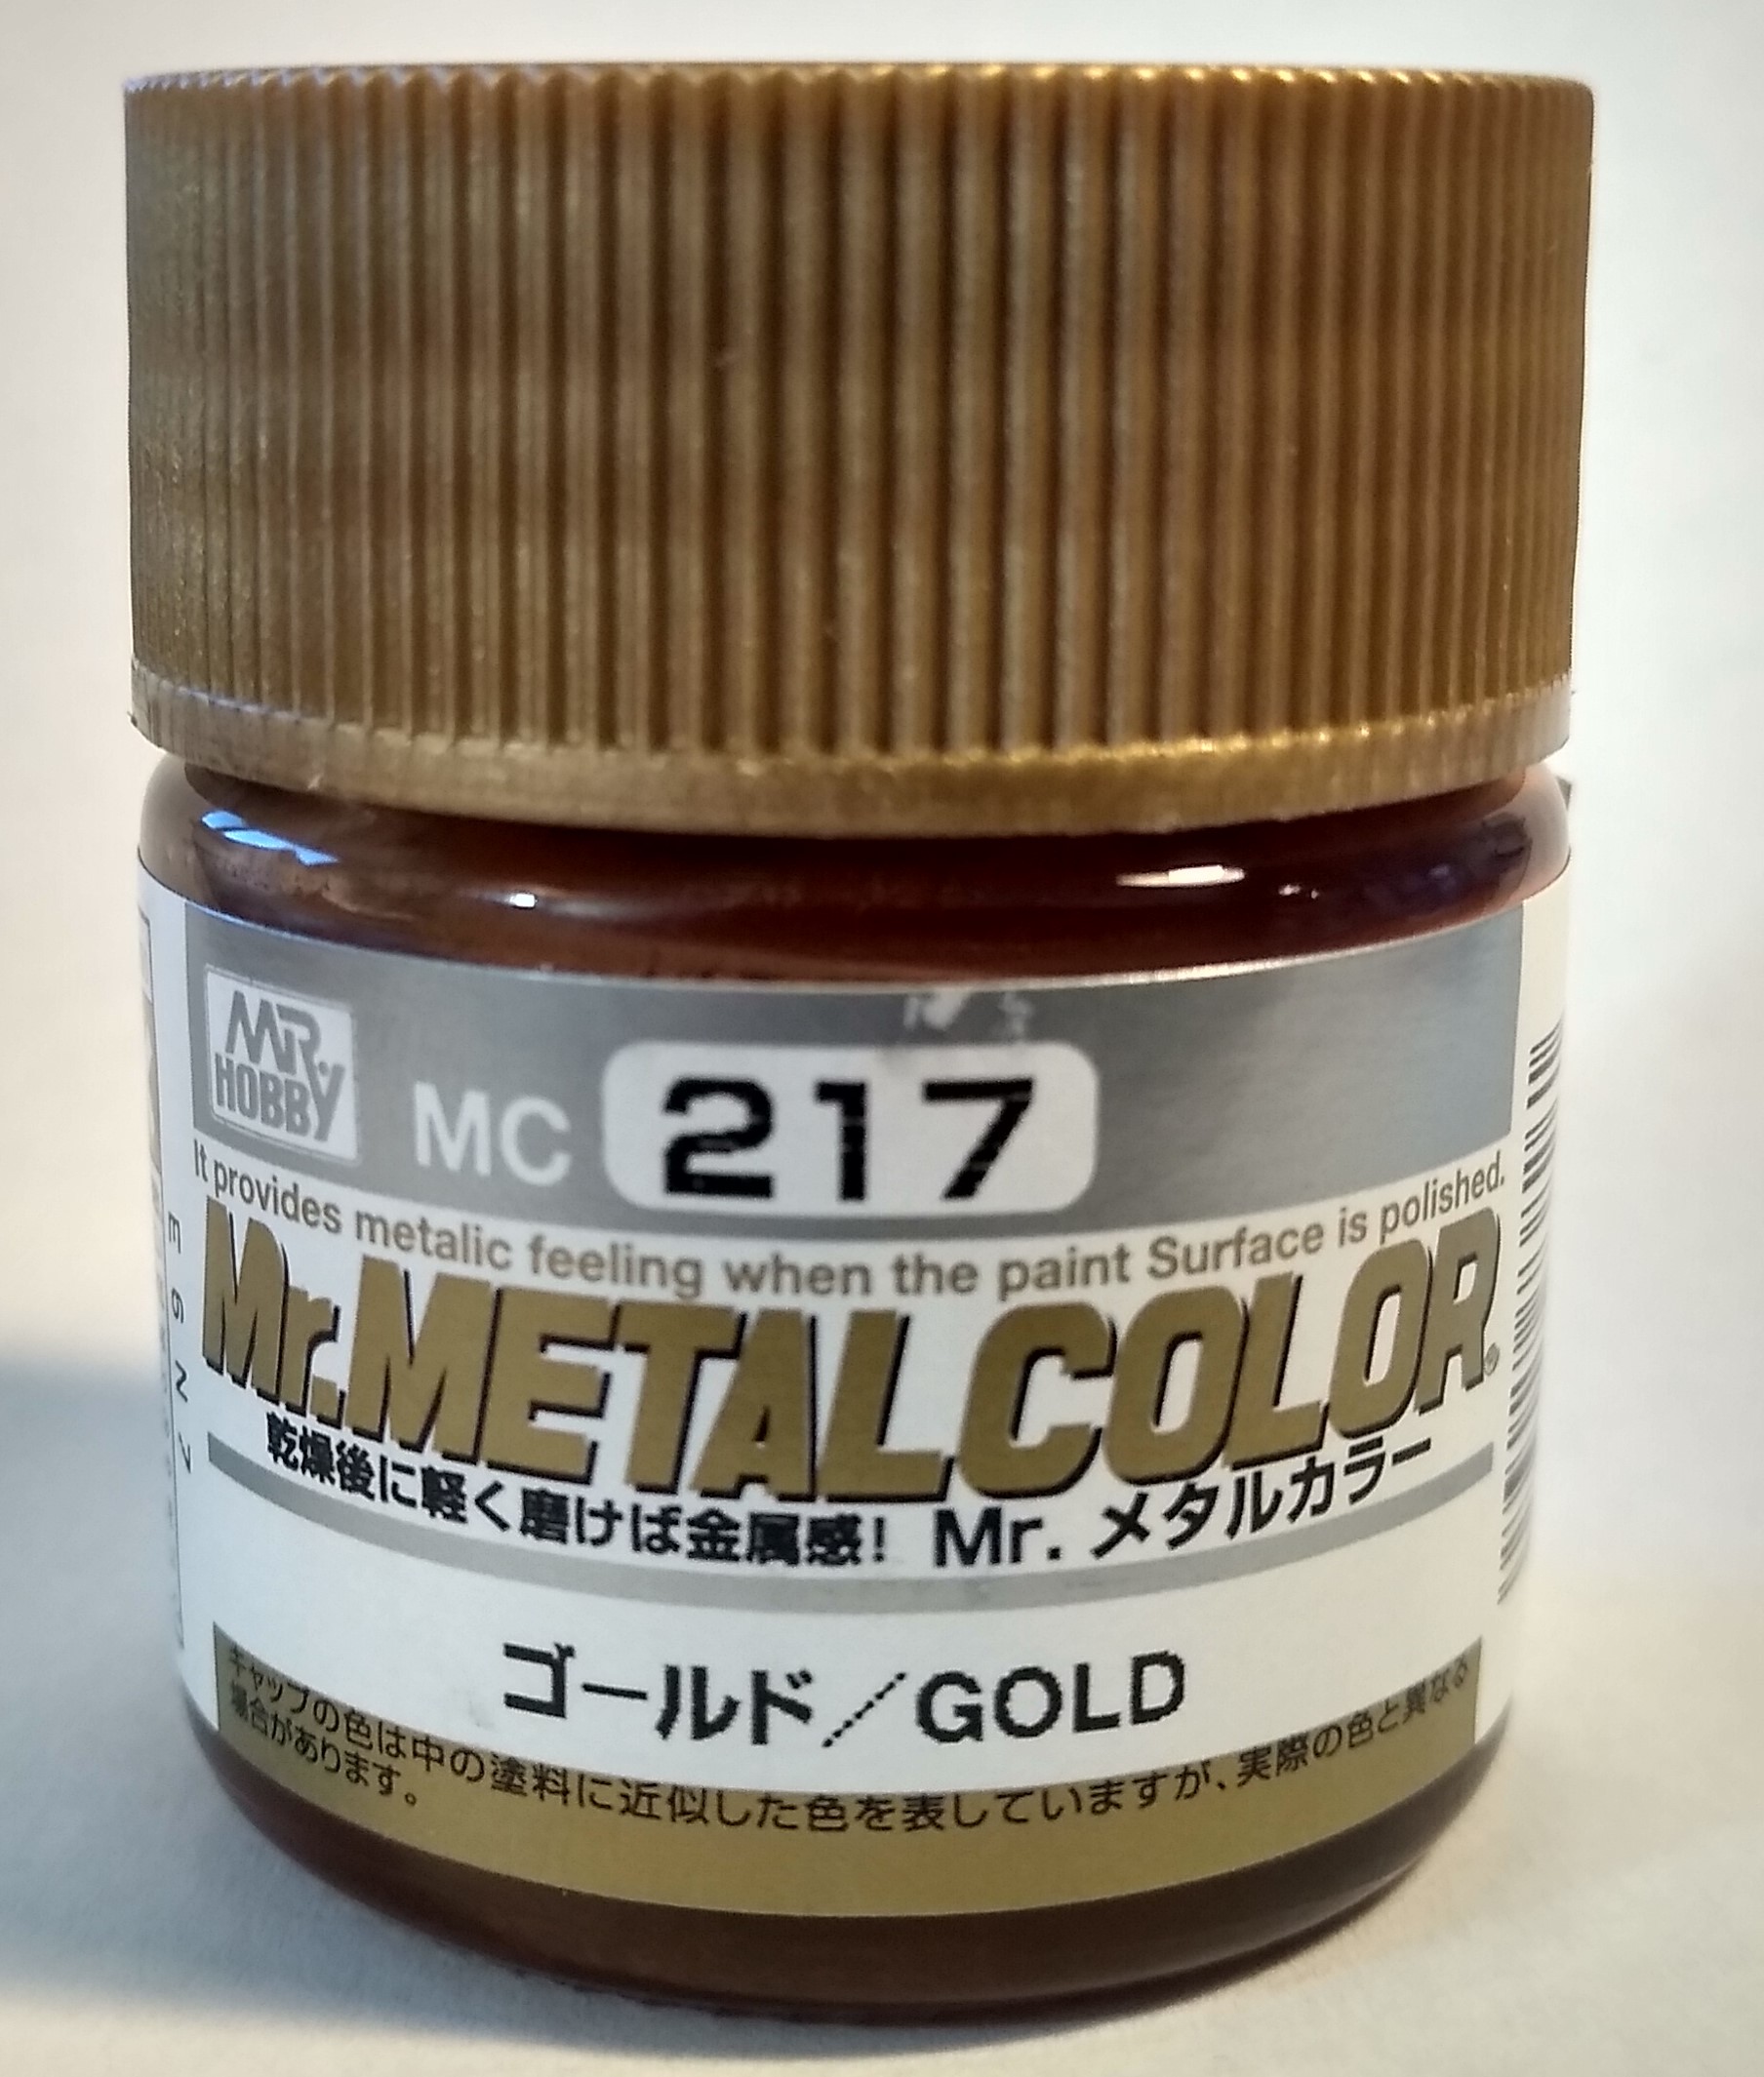 Pot of Mr. Metal Color Gold Paint